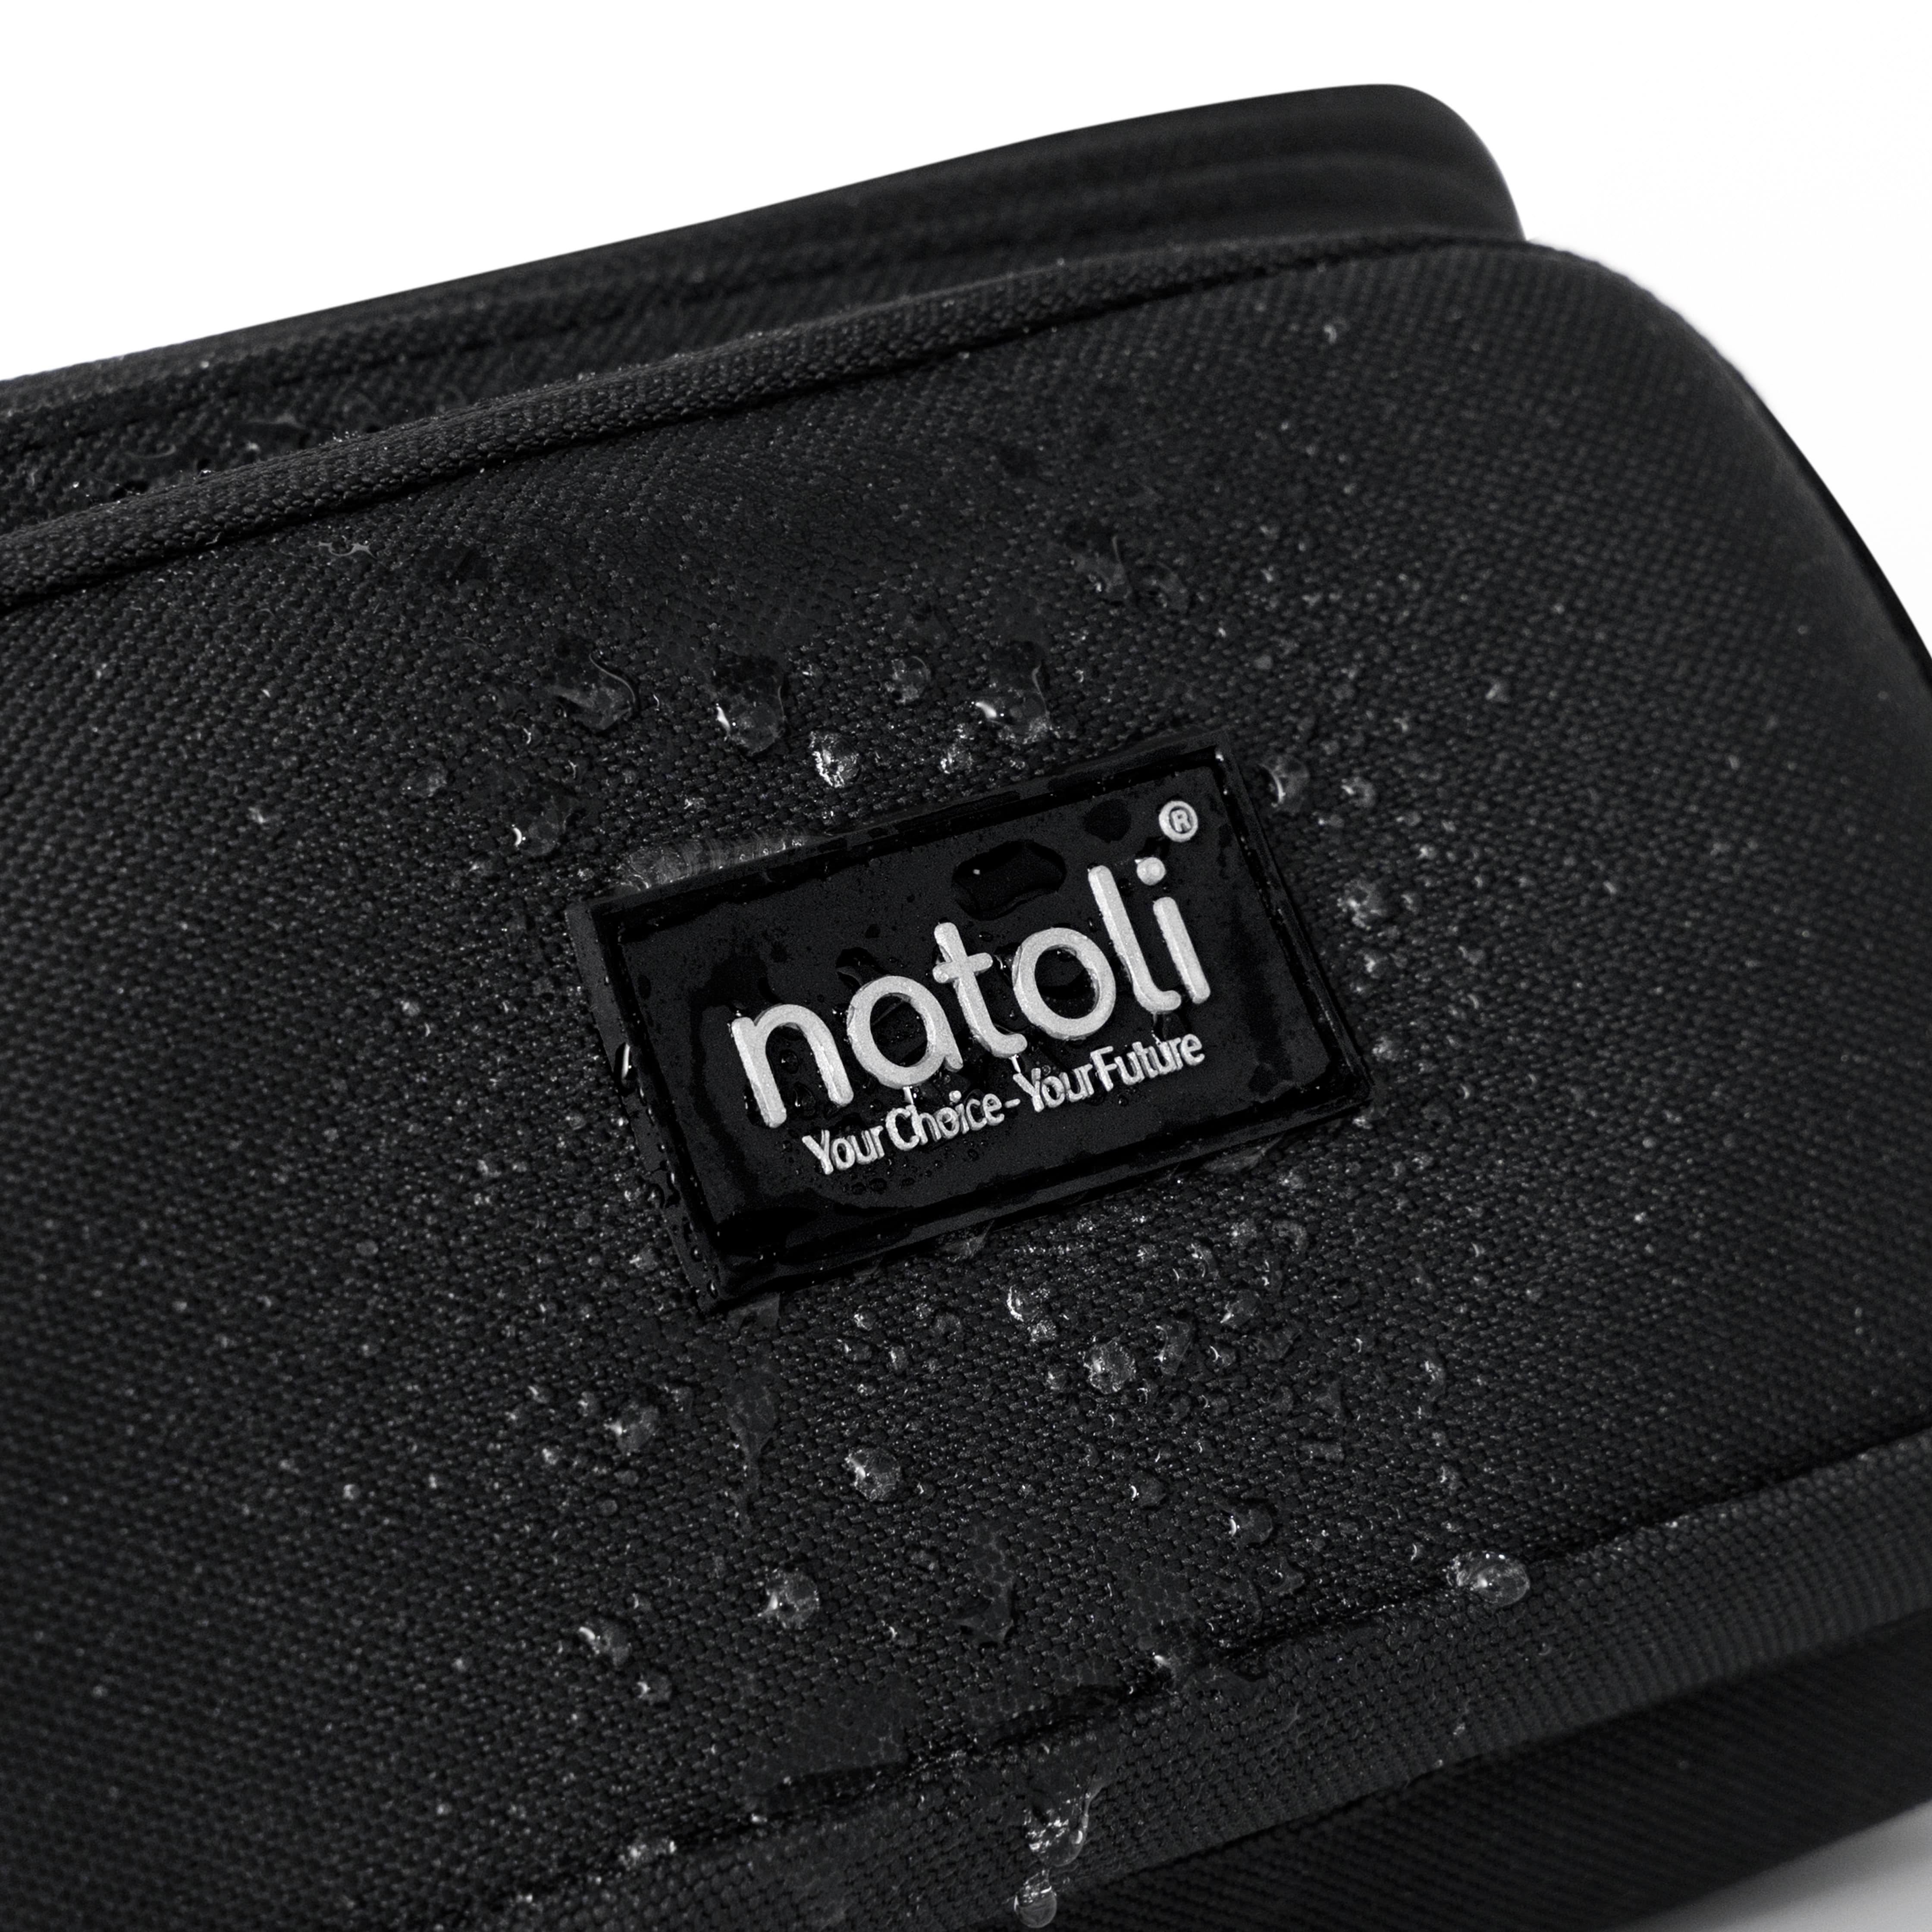 Túi bao tử unisex Cali Cross Bag chính hãng NATOLI nhiều ngăn chống nước thời trang đơn giản cao cấp